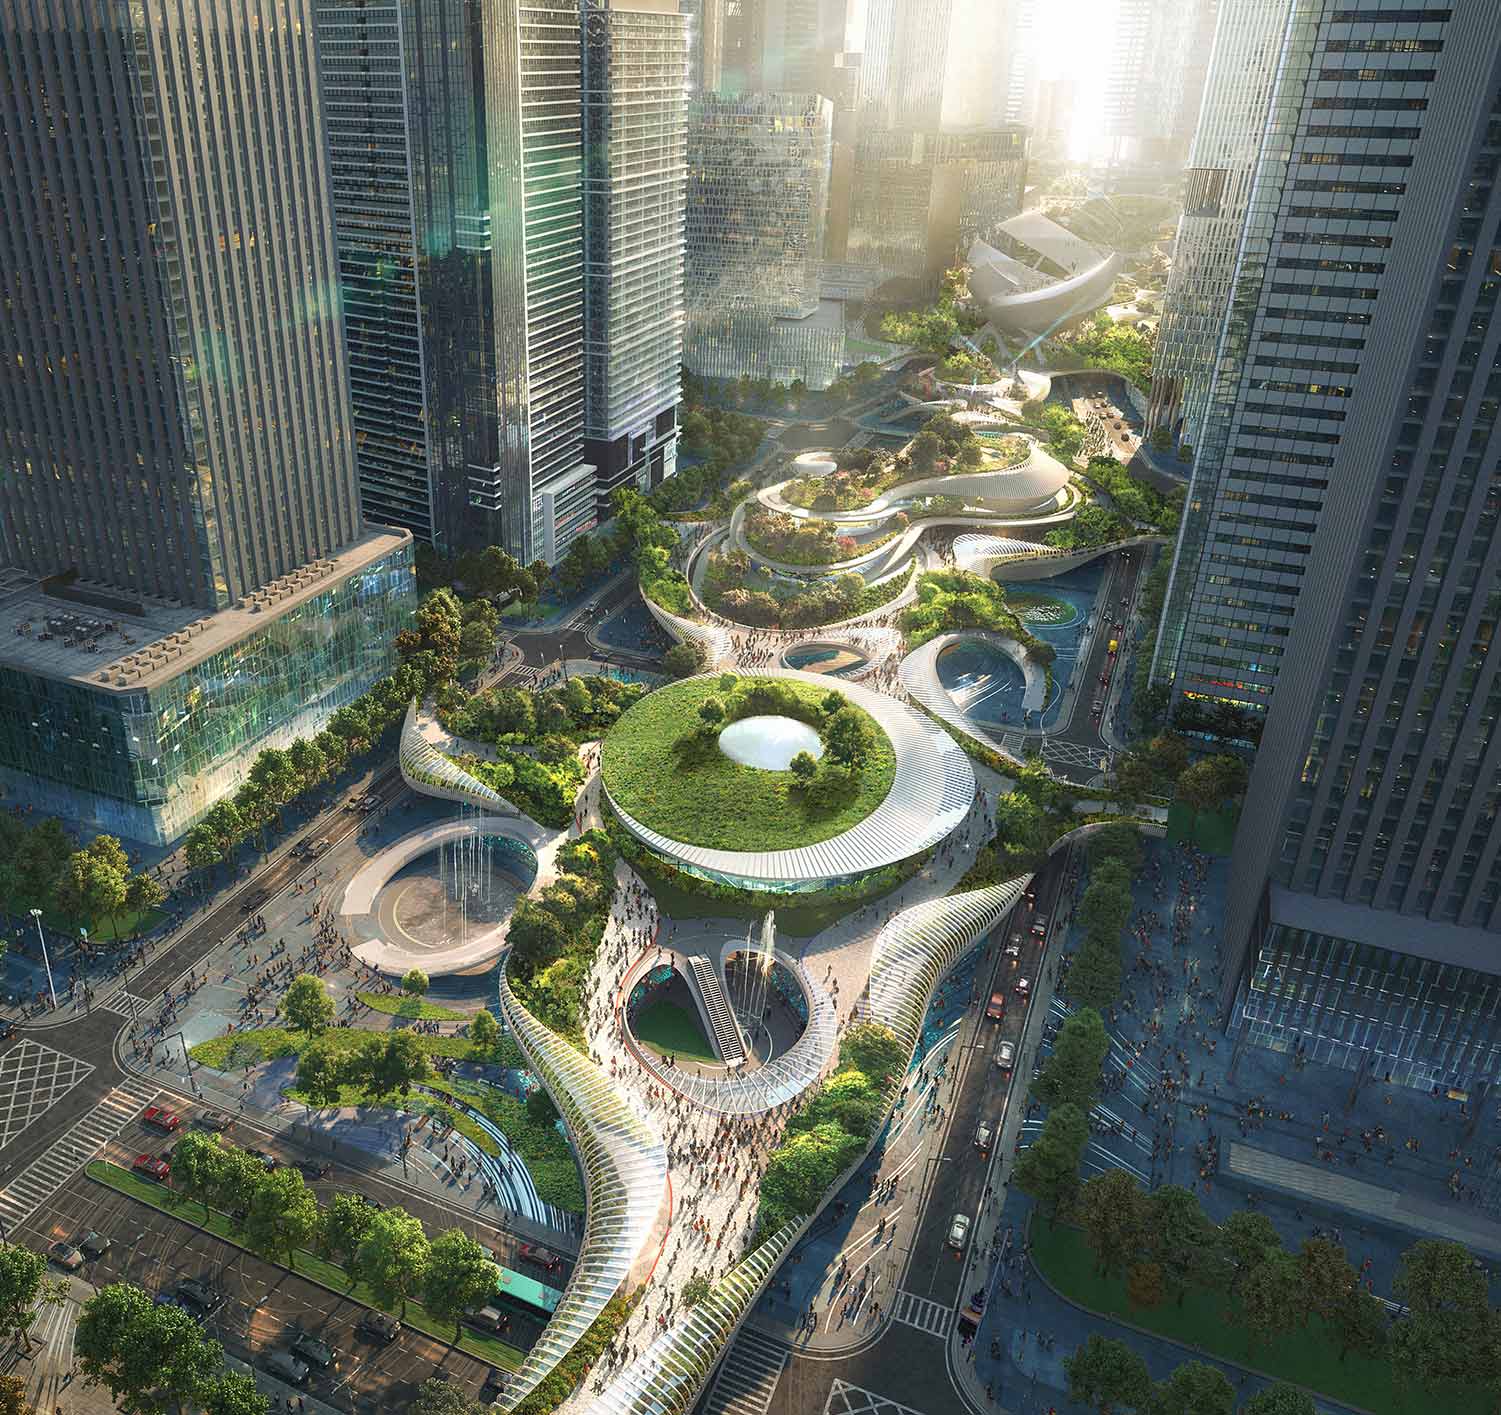 Shenzen Plaza concept